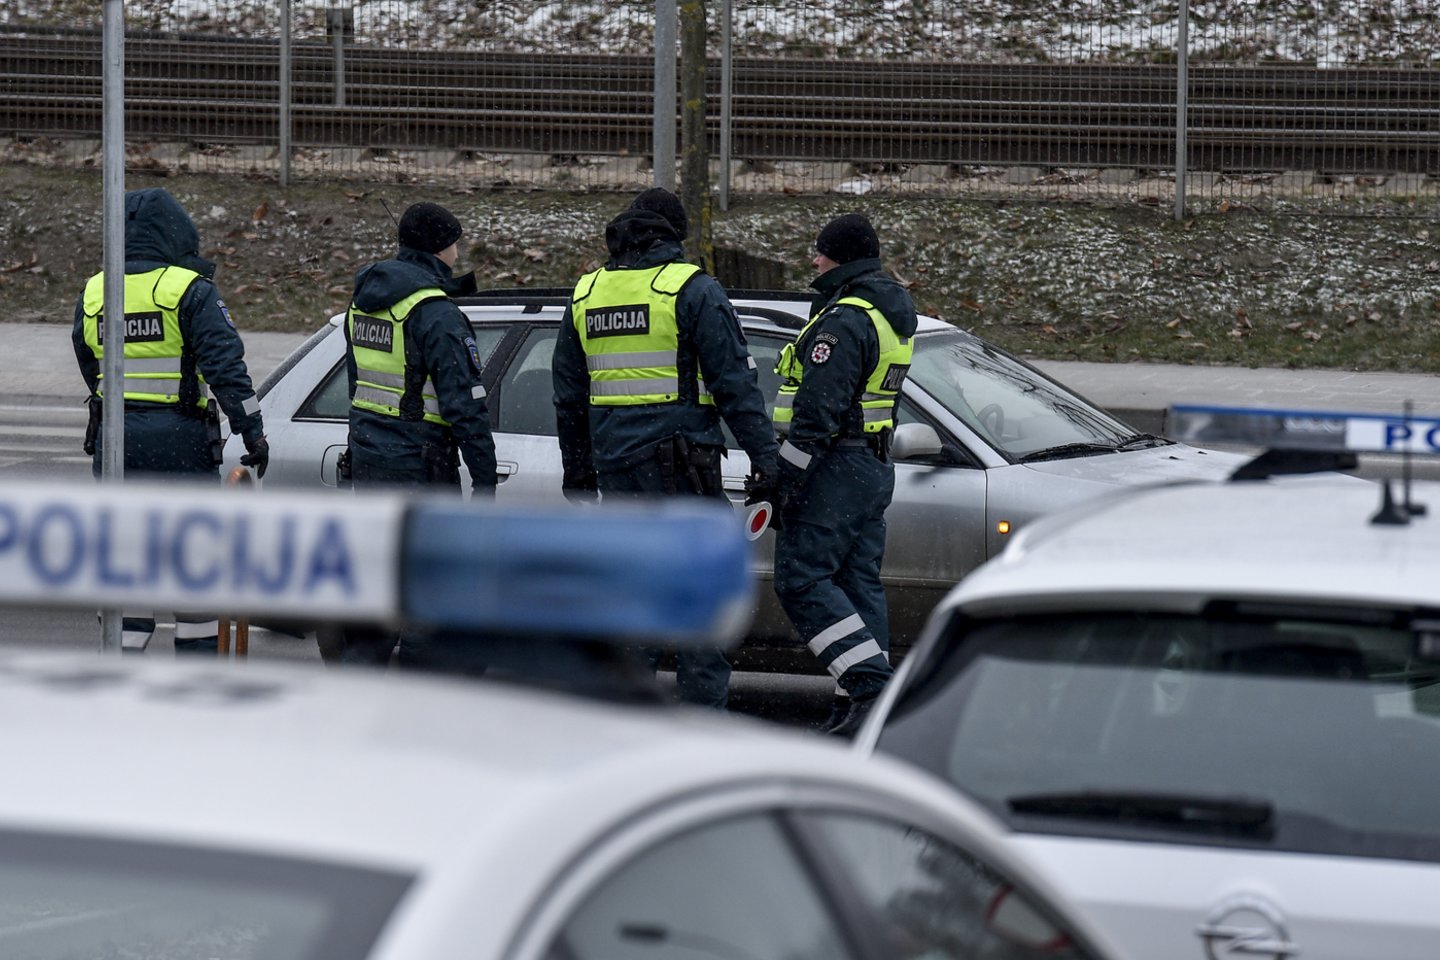 Klaipėdos policijos pareigūnai šešiems vairuotojams už reikalavimų neatitinkančias padangas anuliavo techninės apžiūras ir skyrė pinigines baudas.<br>V.Ščiavinsko nuotr.